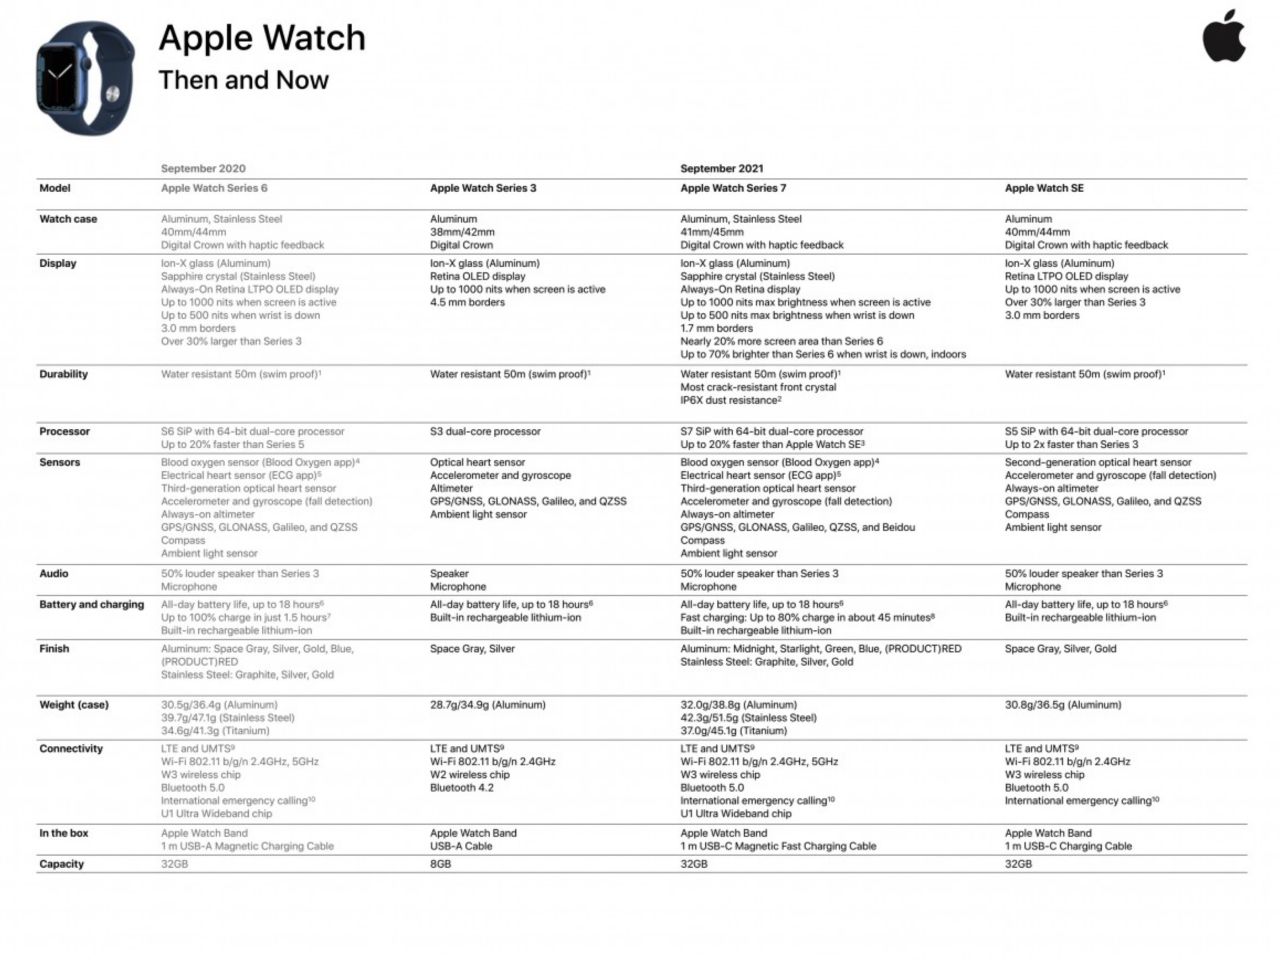 مشخصات اپل واچ Series 7 در فایل رسمی این محصول منتشر شد